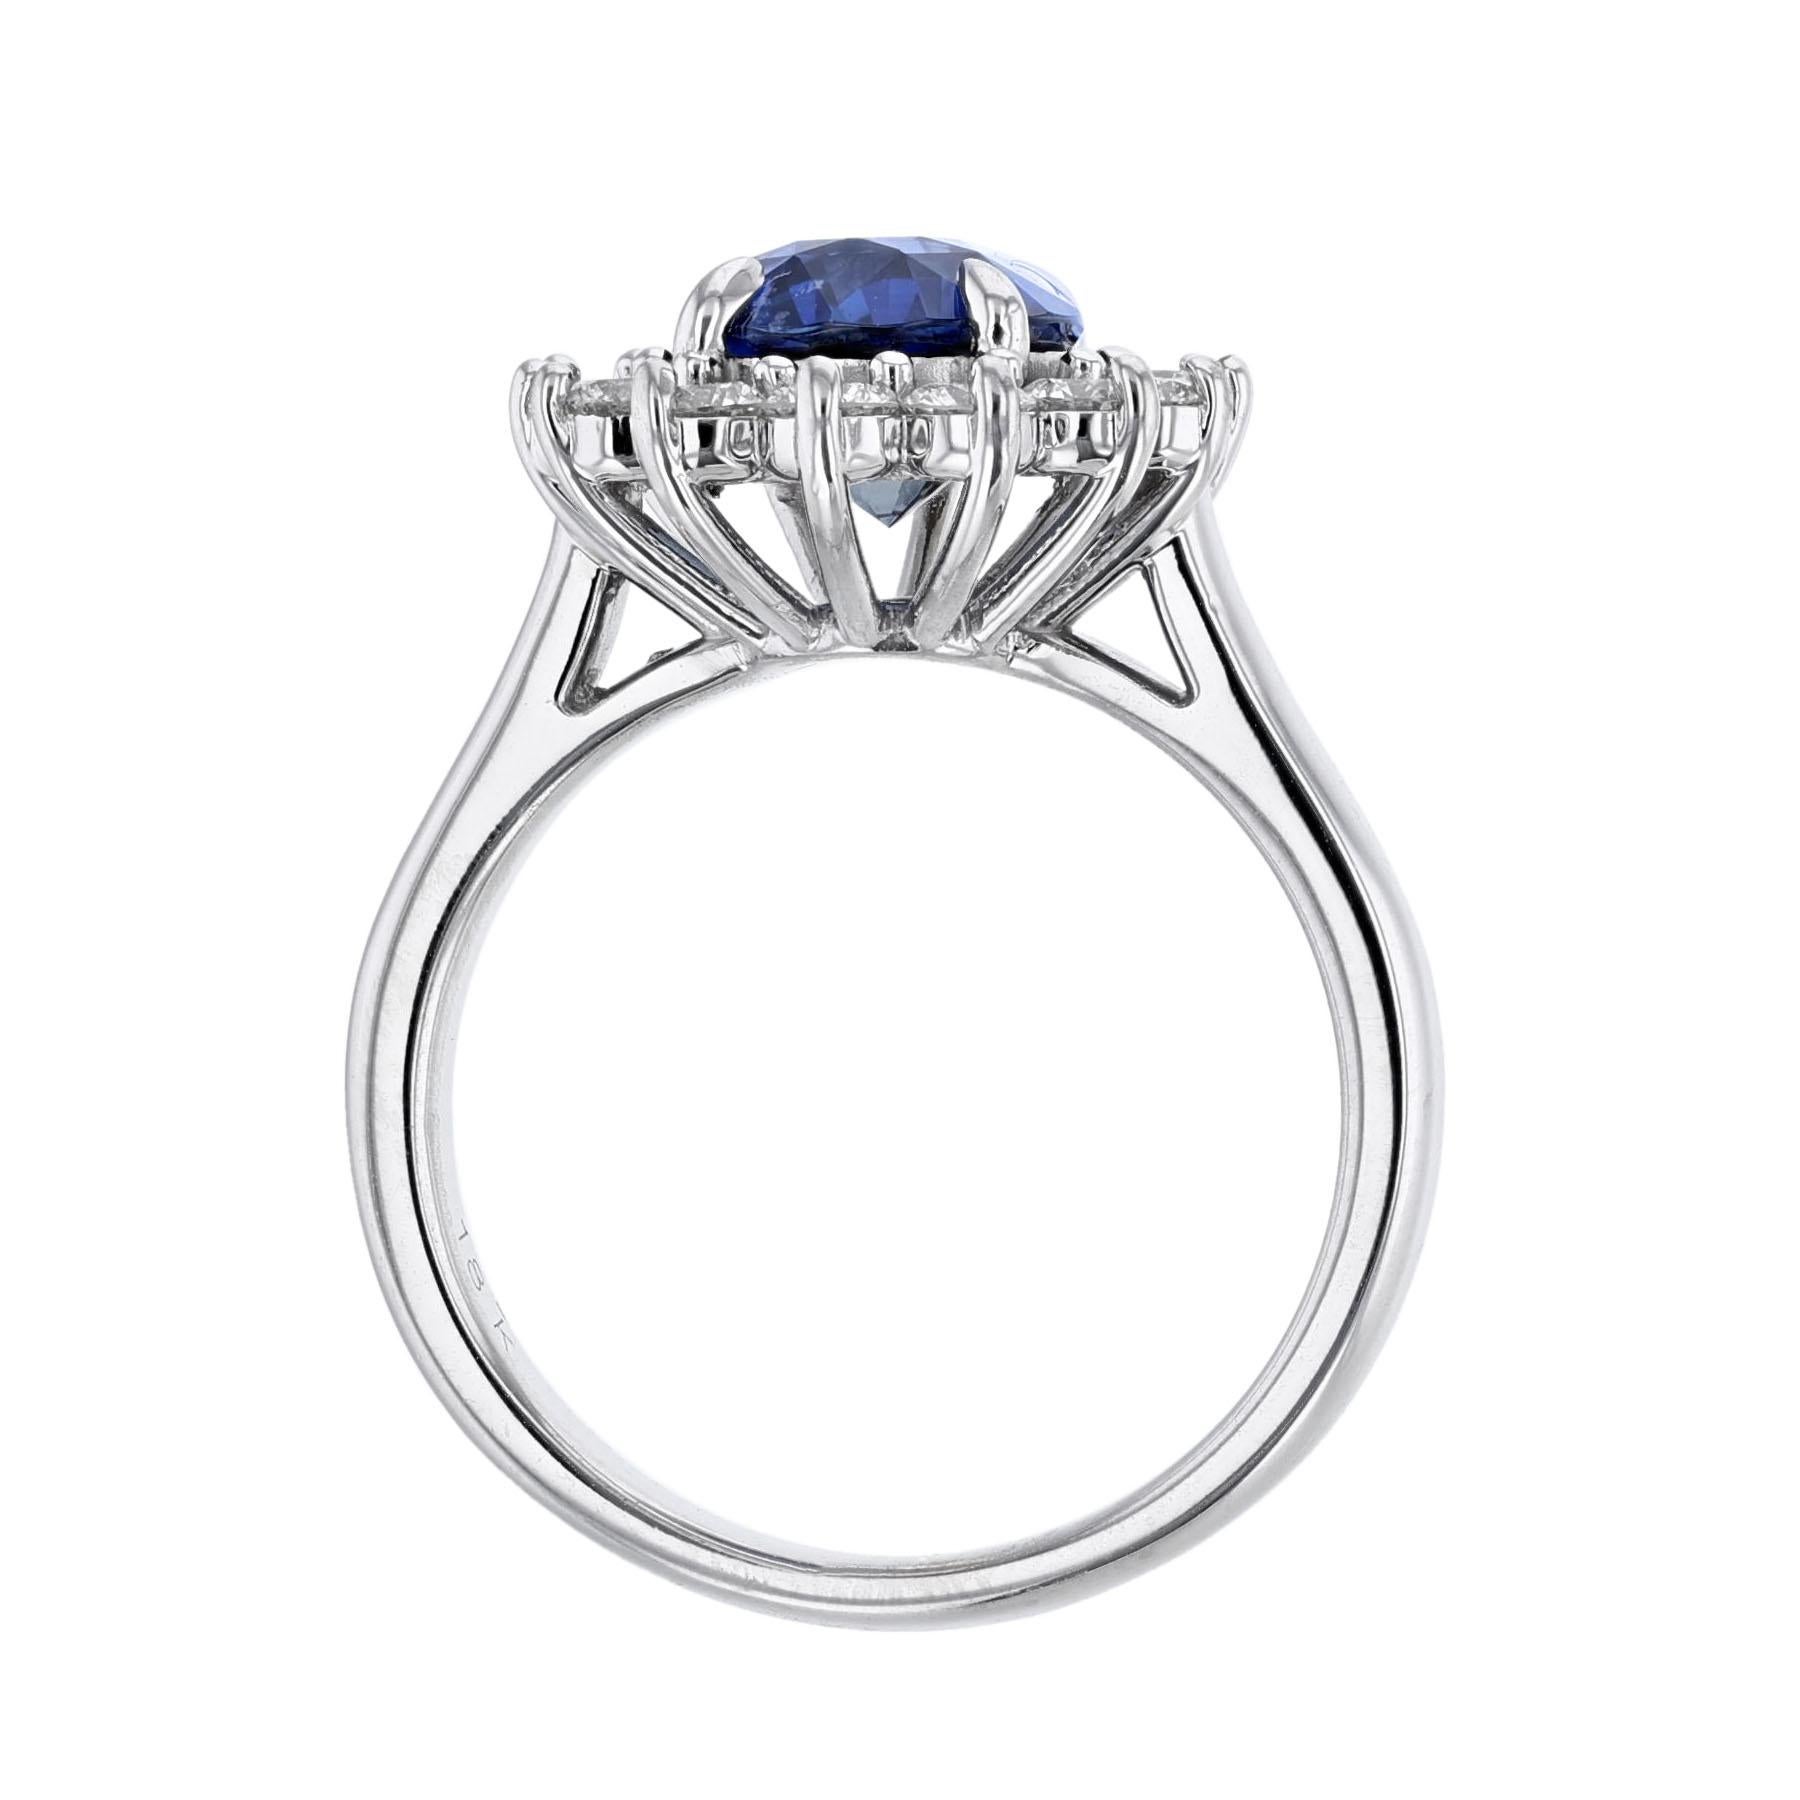 Costco | Blue topaz ring, Topaz ring, Rings